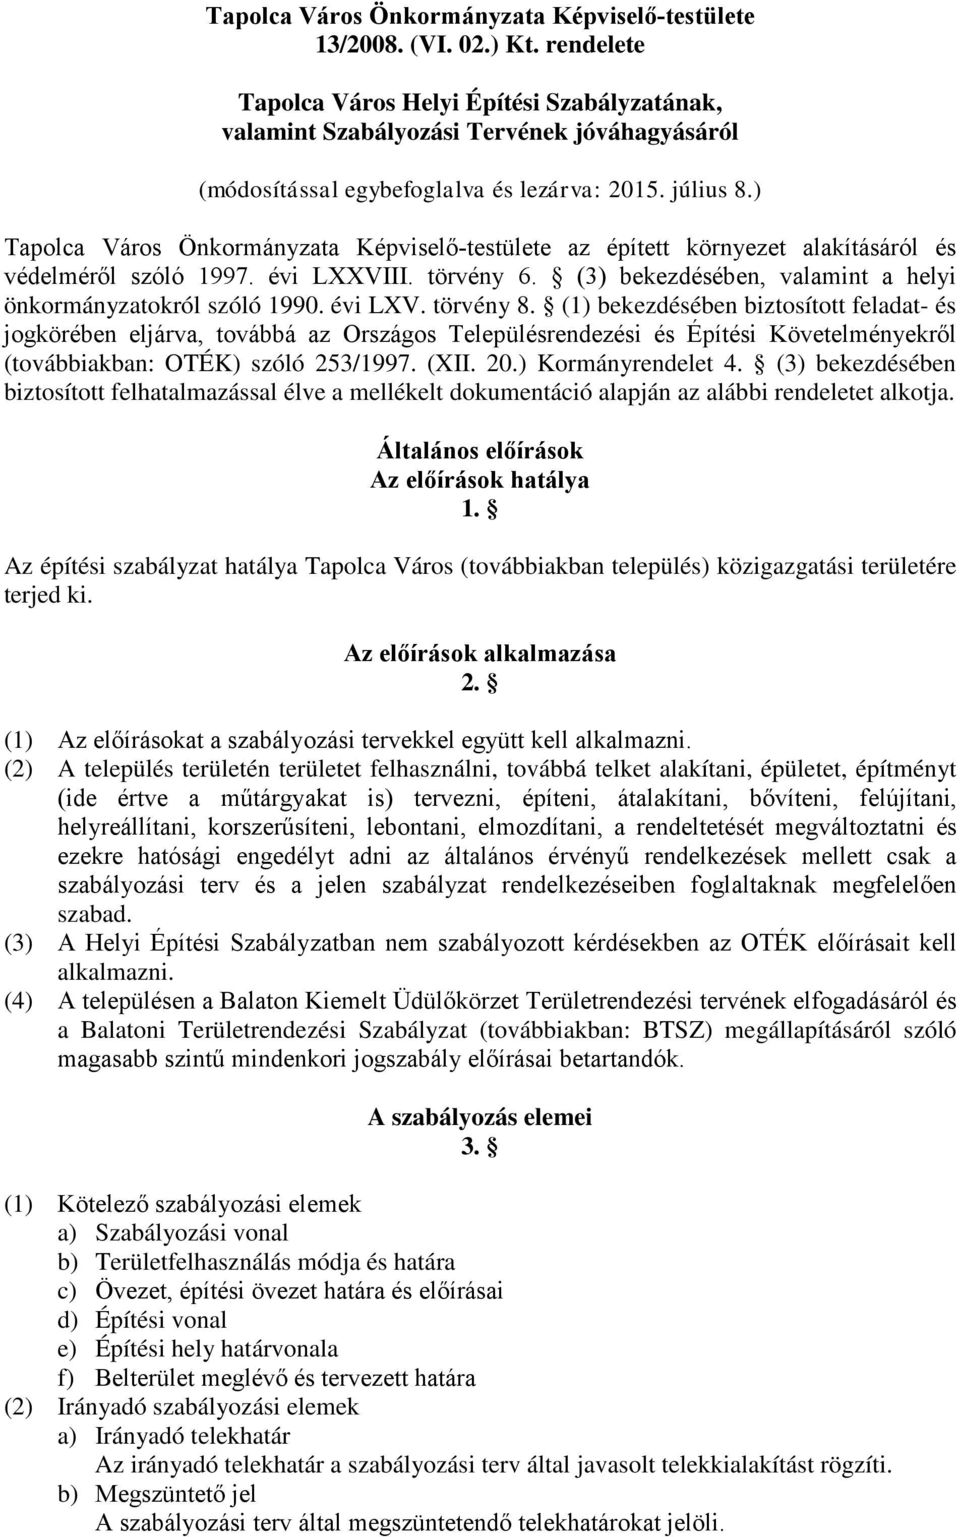 ) Tapolca Város Önkormányzata Képviselő-testülete az épített környezet alakításáról és védelméről szóló 1997. évi LXXVIII. törvény 6. (3) bekezdésében, valamint a helyi önkormányzatokról szóló 1990.